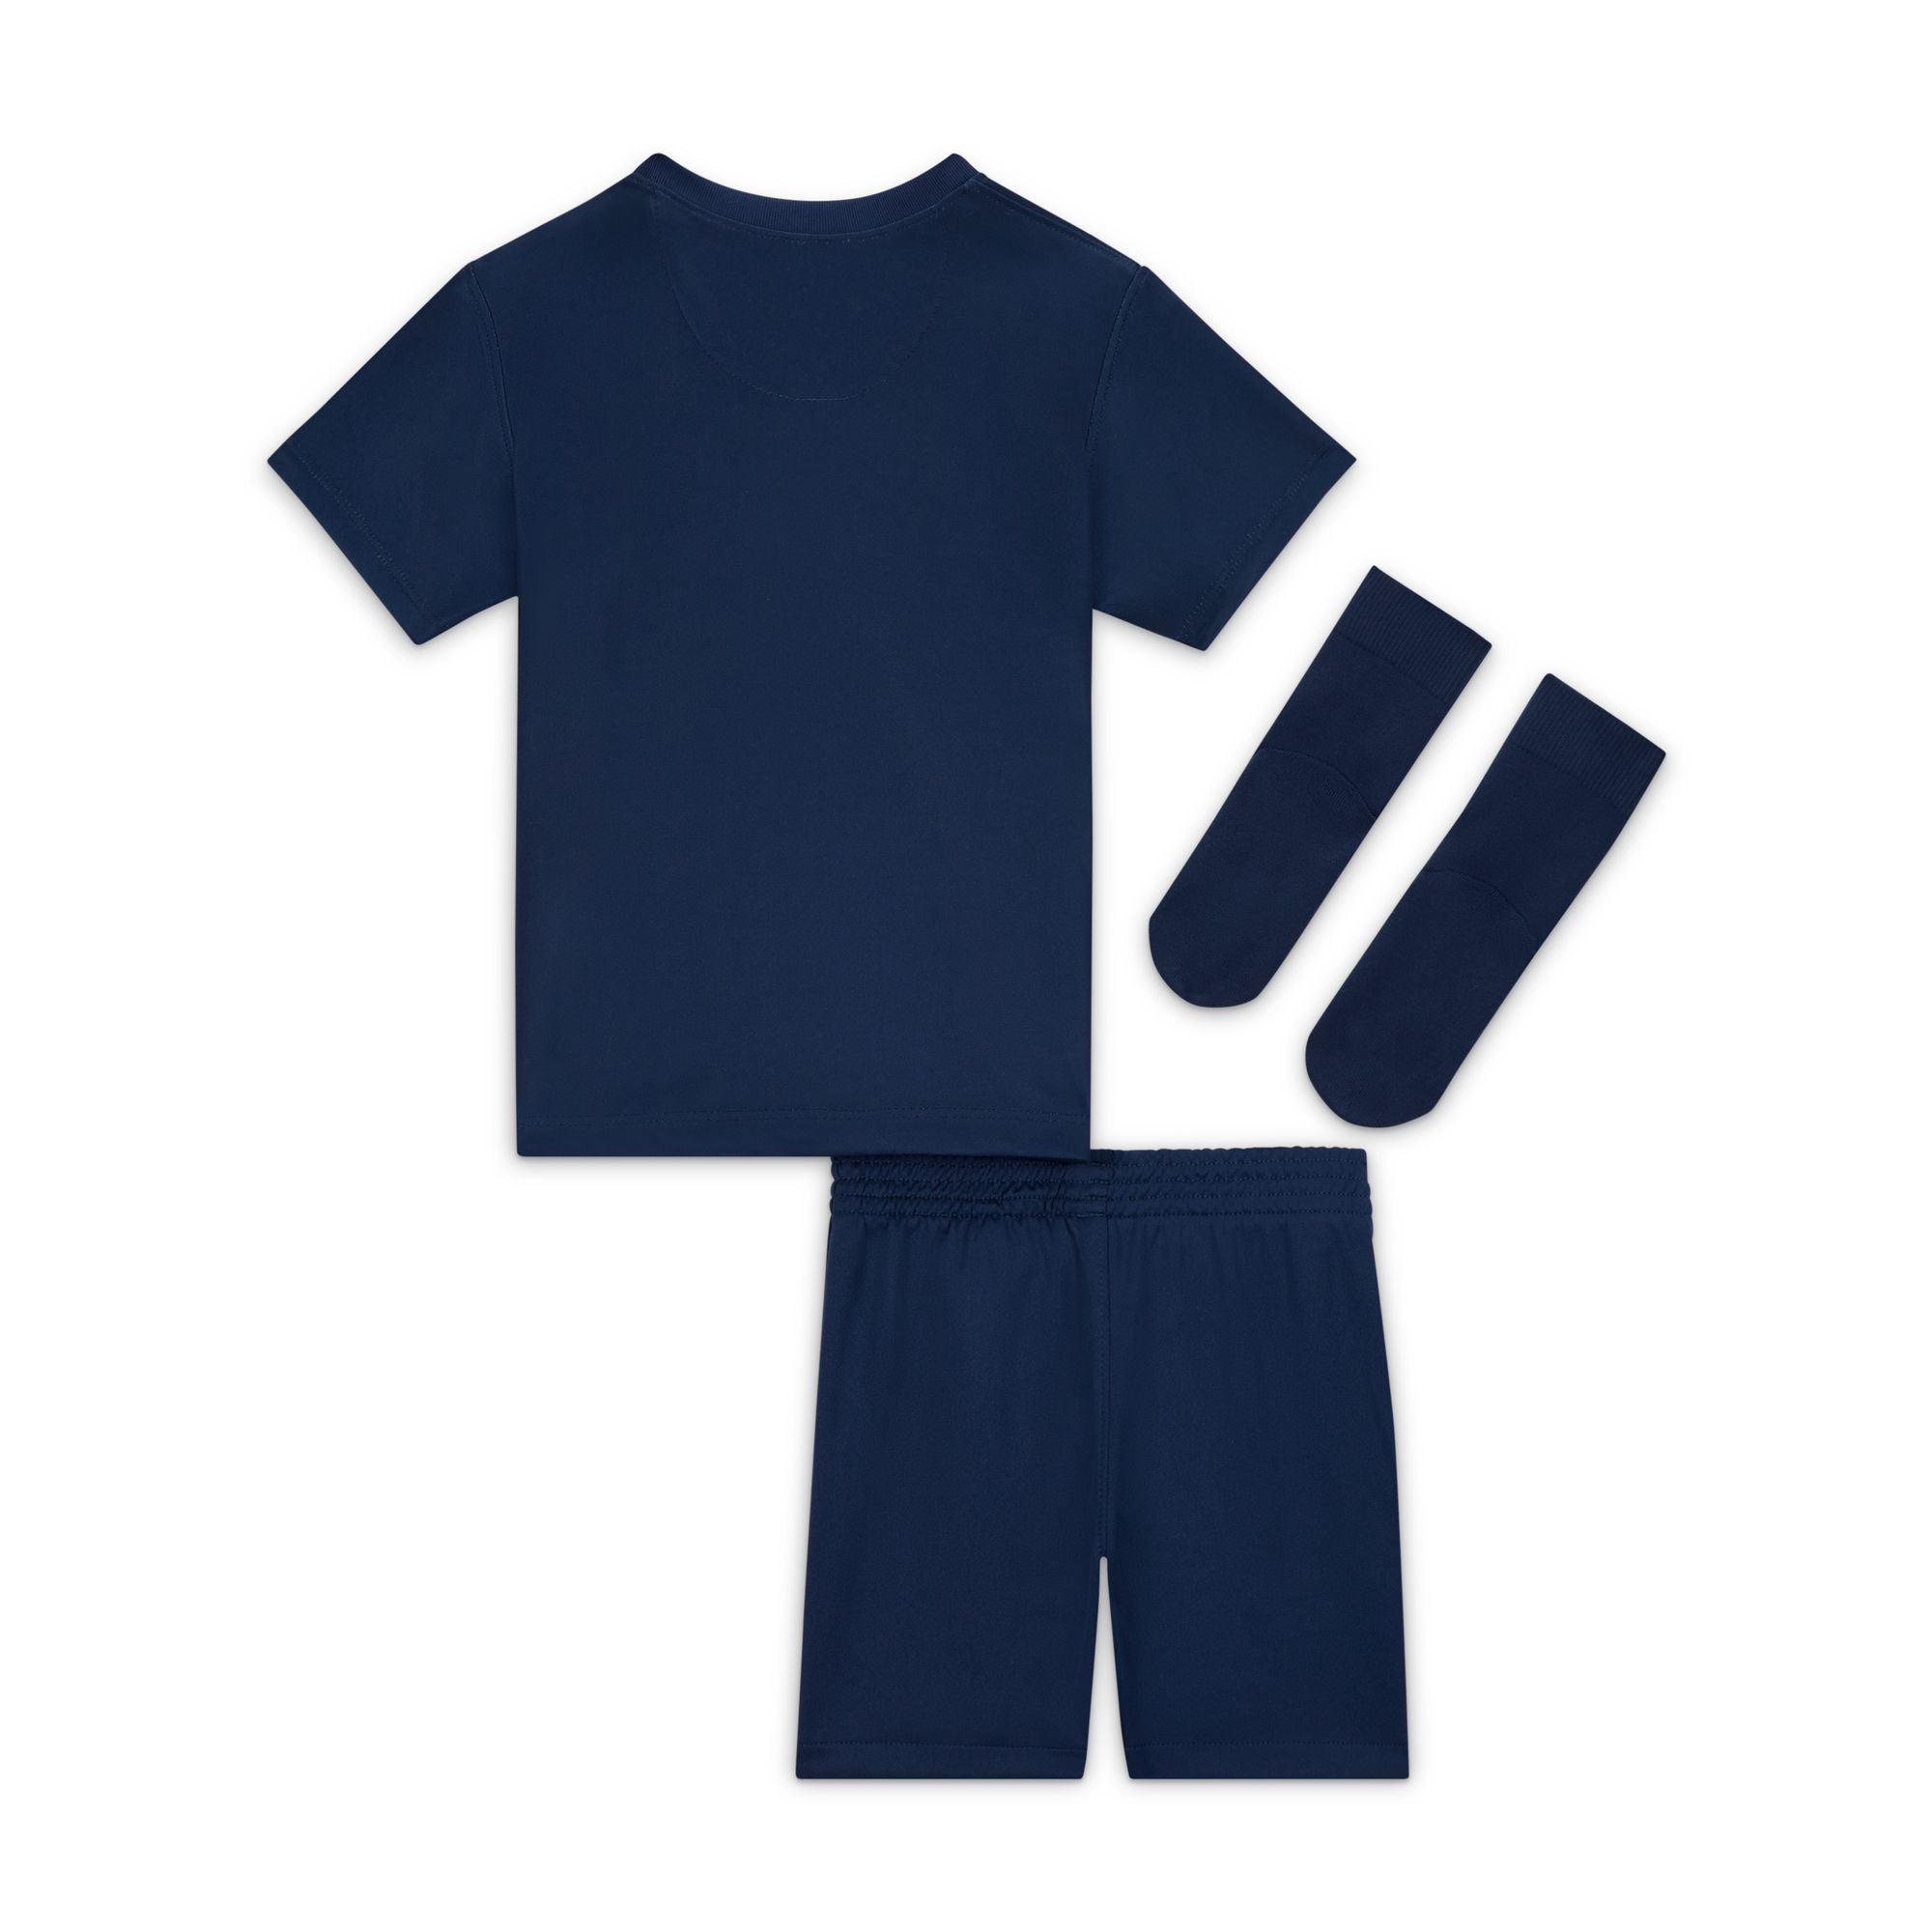 Infants Paris Saint-Germain FC Home Replica Kit 22/23